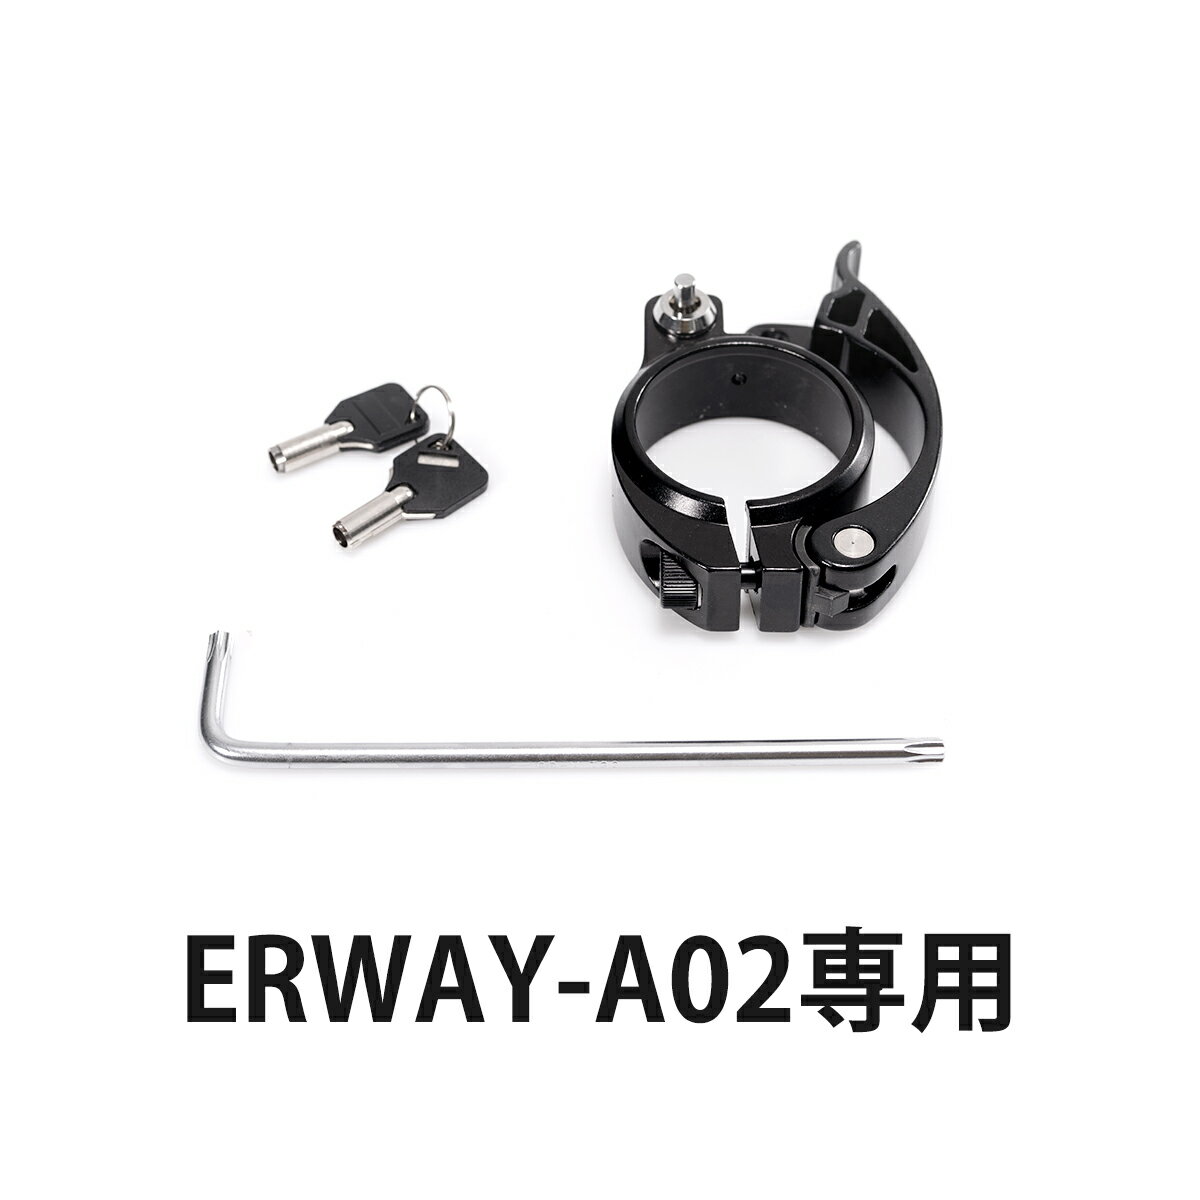 【商品仕様】 ブランド名： ERWAY メーカー型番： erway-a02-clamp 代表カラー： ブラック ロック方式： 鍵式 個数： 1 カラー： ブラック 【注意事項】 ※この商品はerway-a02専用です（erway-a01にはご使用いただけません） ※北海道・沖縄・離島配送不可です。 ※直送の為、他の商品と同梱不可です。